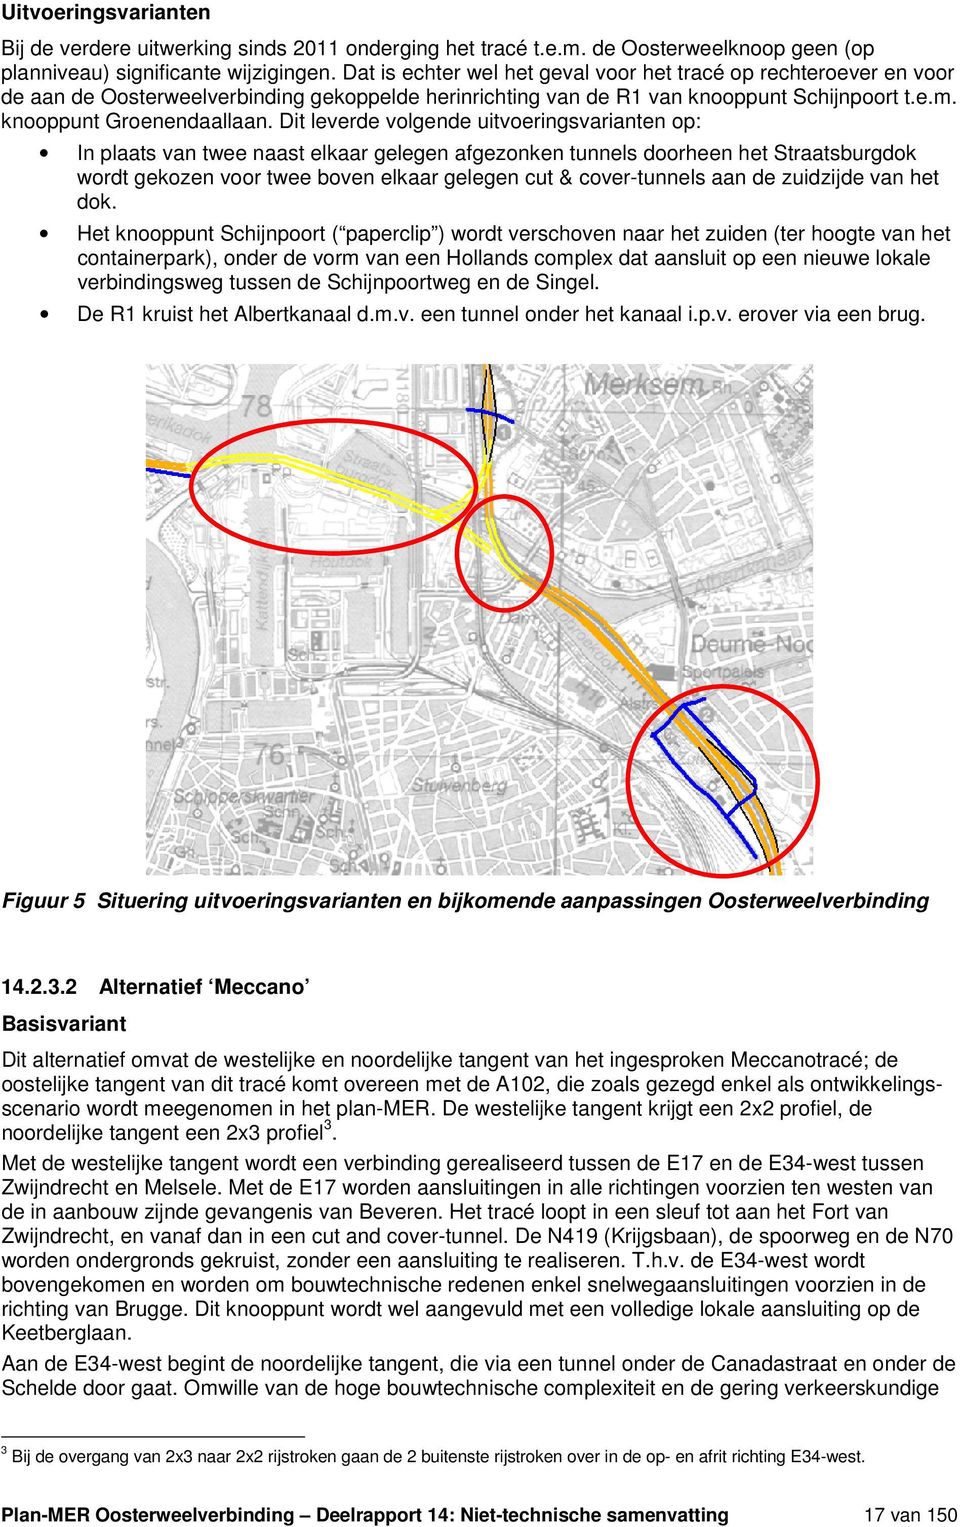 Dit leverde volgende uitvoeringsvarianten op: In plaats van twee naast elkaar gelegen afgezonken tunnels doorheen het Straatsburgdok wordt gekozen voor twee boven elkaar gelegen cut & cover-tunnels